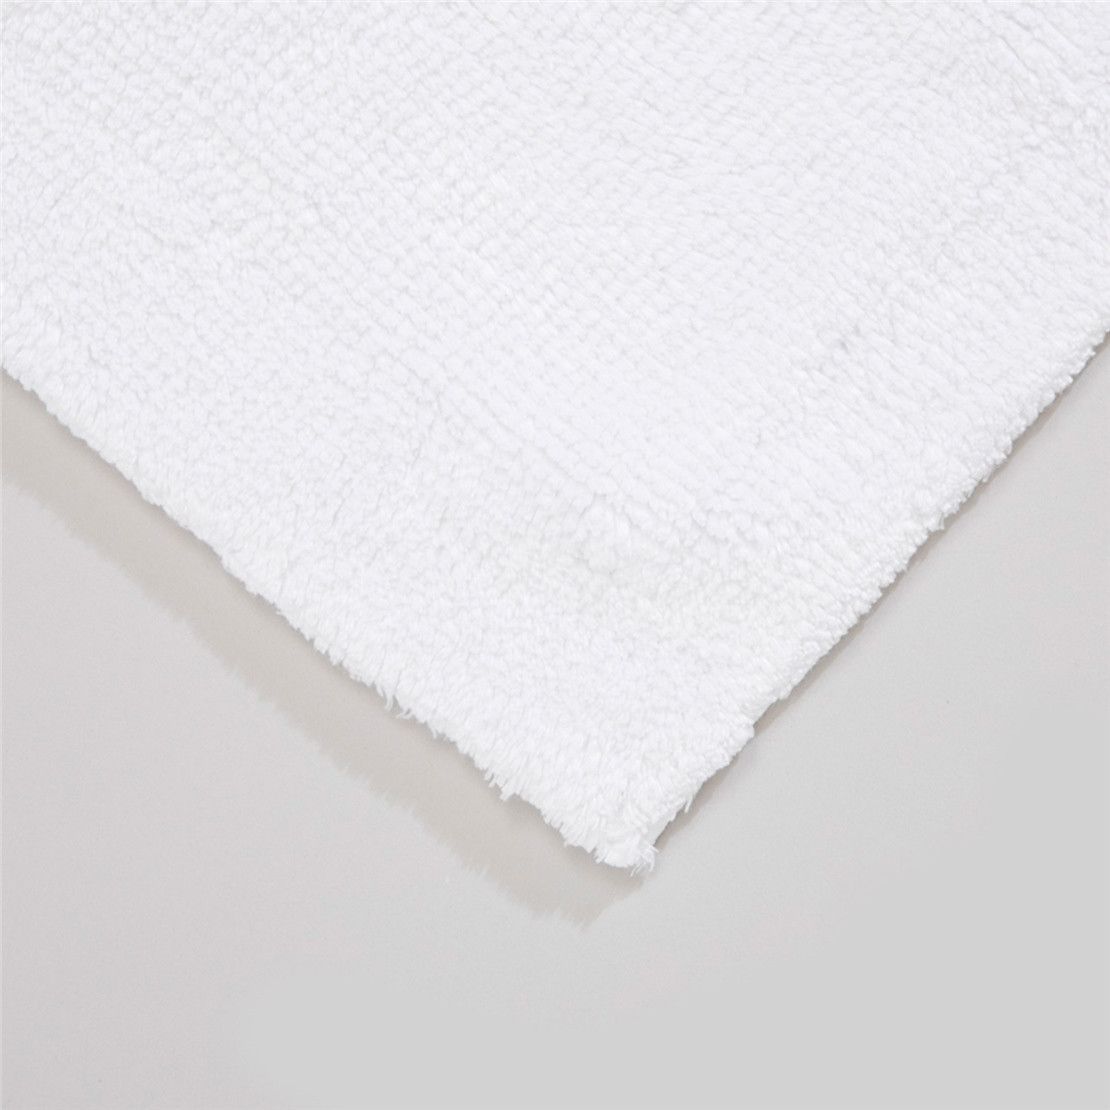 Мягкий бамбуковый коврик для ванной комнаты Bamboo 60*100, белый